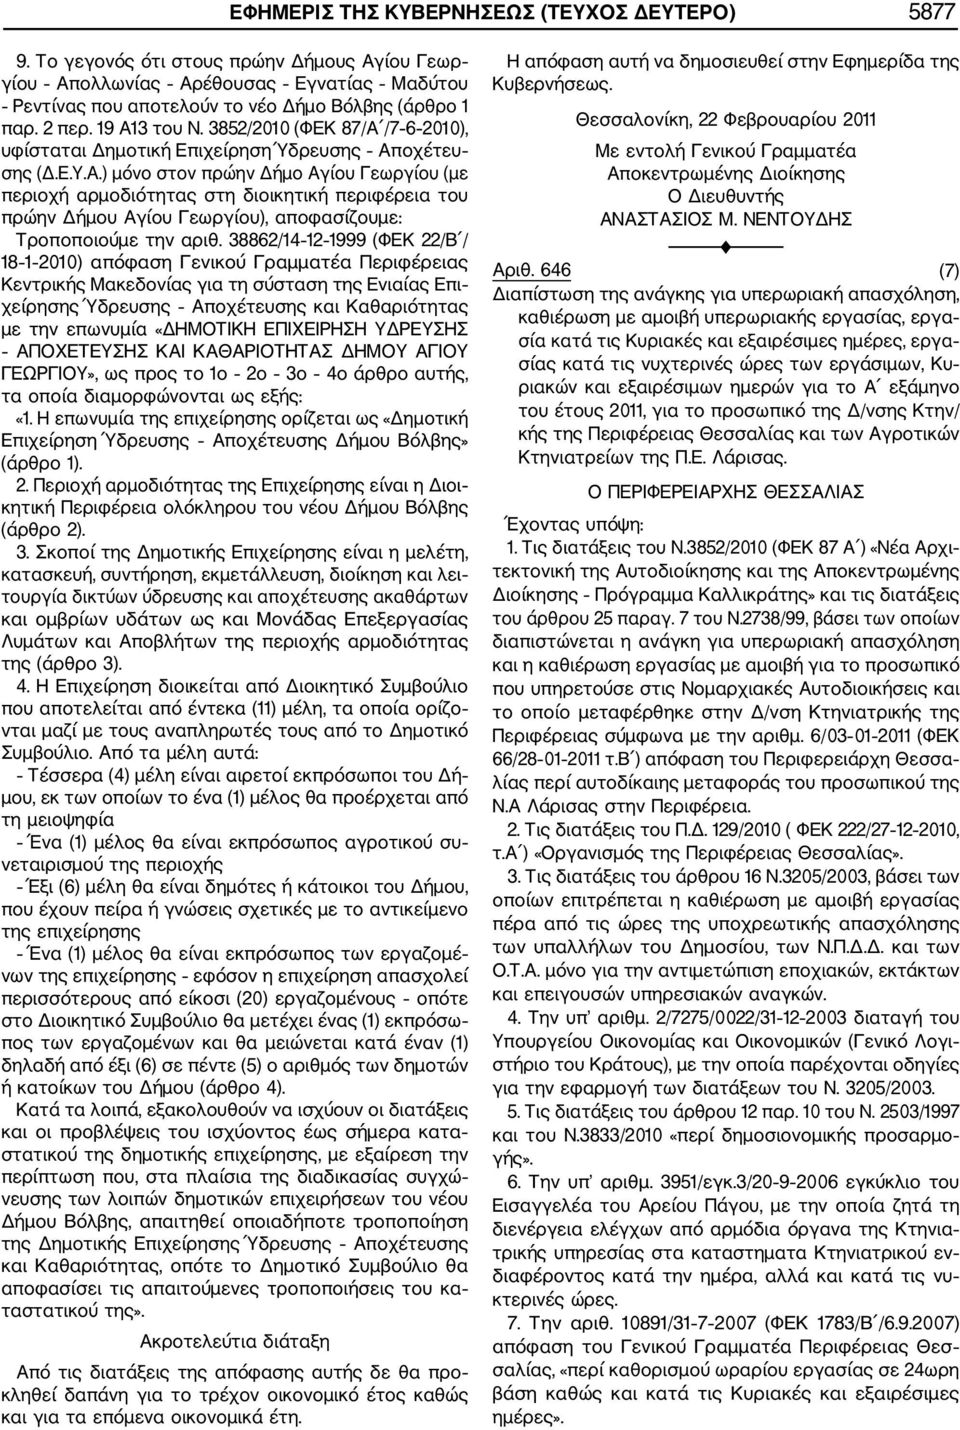 38862/14 12 1999 (ΦΕΚ 22/Β / 18 1 2010) απόφαση Γενικού Γραμματέα Περιφέρειας Κεντρικής Μακεδονίας για τη σύσταση της Ενιαίας Επι χείρησης Ύδρευσης Αποχέτευσης και Καθαριότητας με την επωνυμία